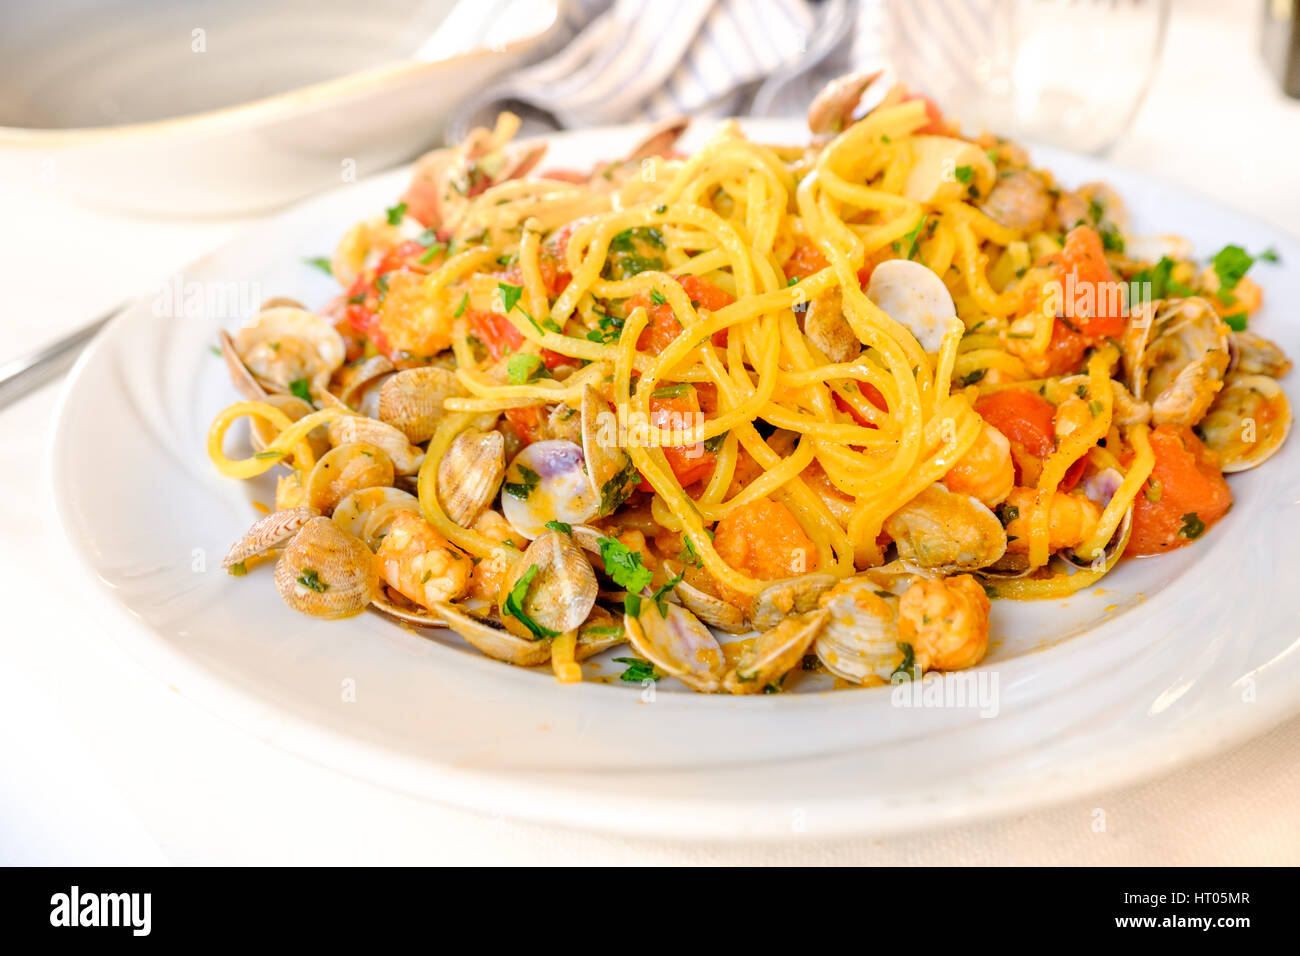 Spaghetti alla Chitarra spaghetti allo scoglio palourdes Crevettes fruits de mer italiens Banque D'Images